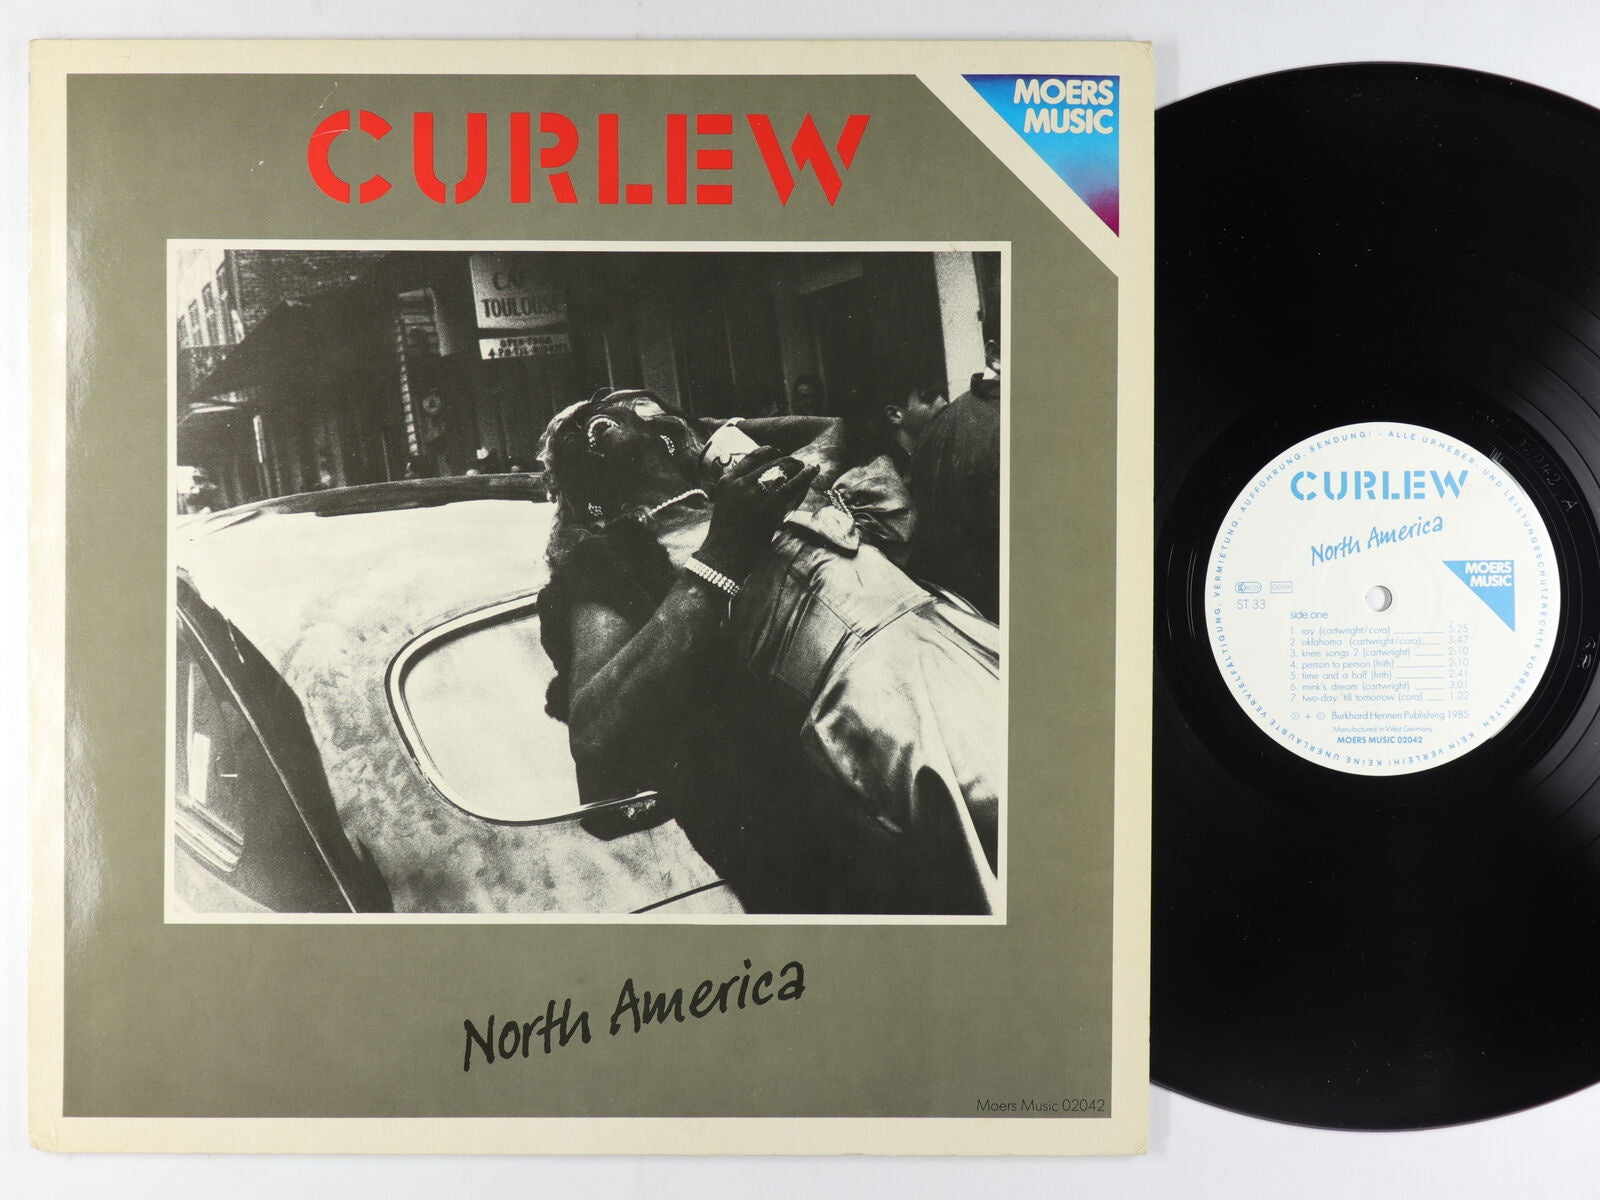 Curlew ‎– North America - Lp Record 1985 Moers Music German Import Vinyl - Free Jazz / Avantgarde